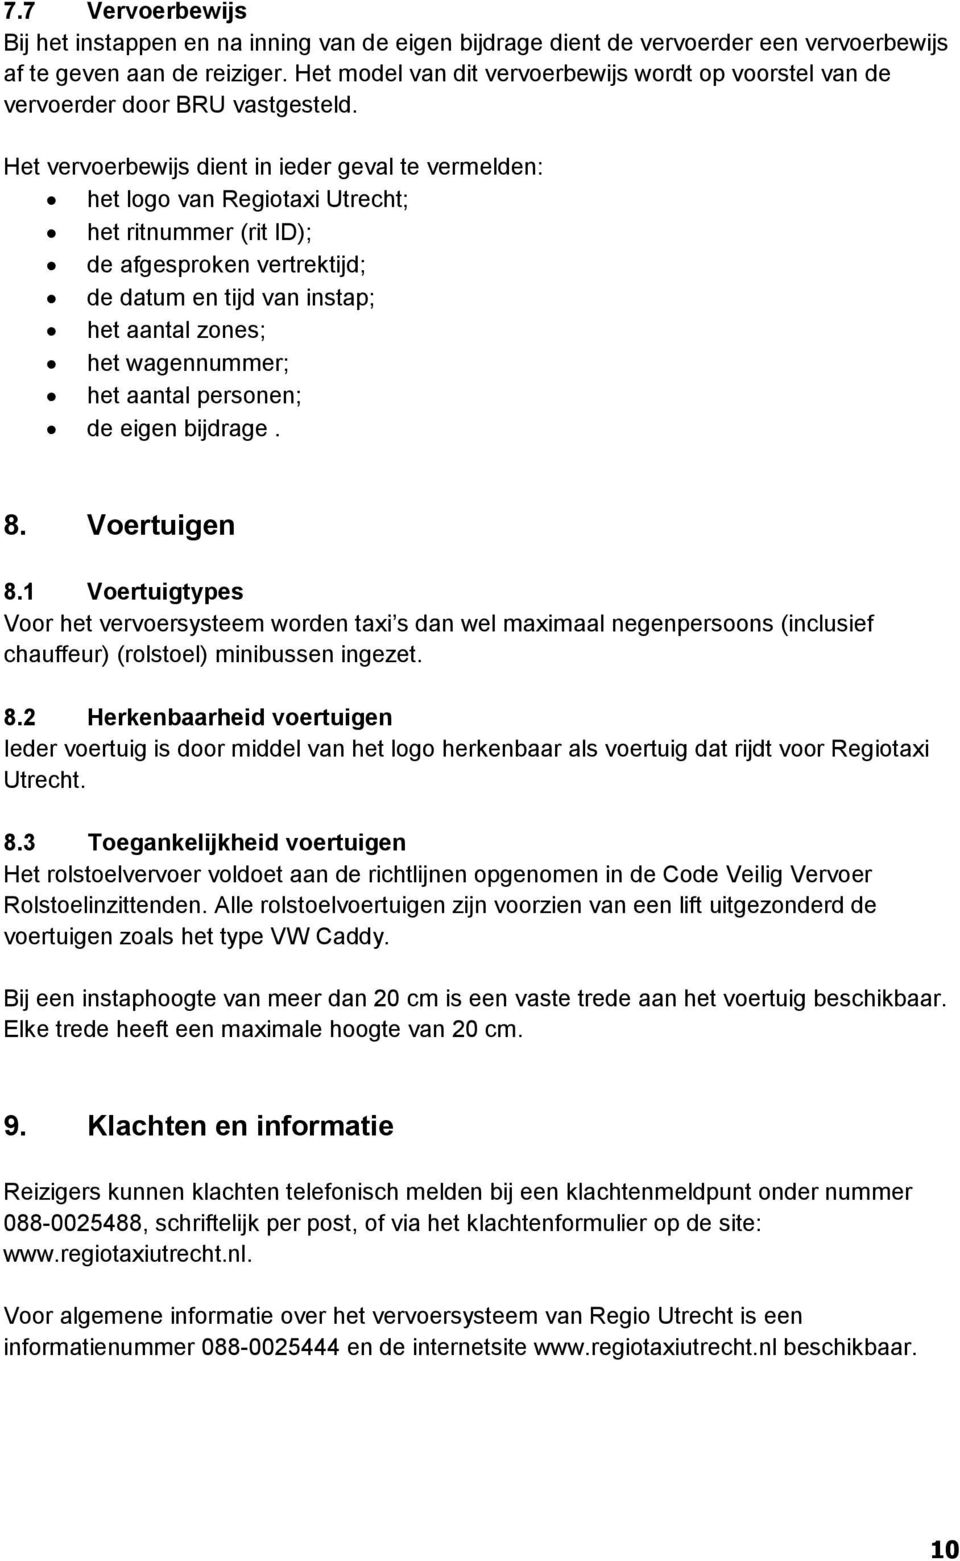 Het vervoerbewijs dient in ieder geval te vermelden: het logo van Regiotaxi Utrecht; het ritnummer (rit ID); de afgesproken vertrektijd; de datum en tijd van instap; het aantal zones; het